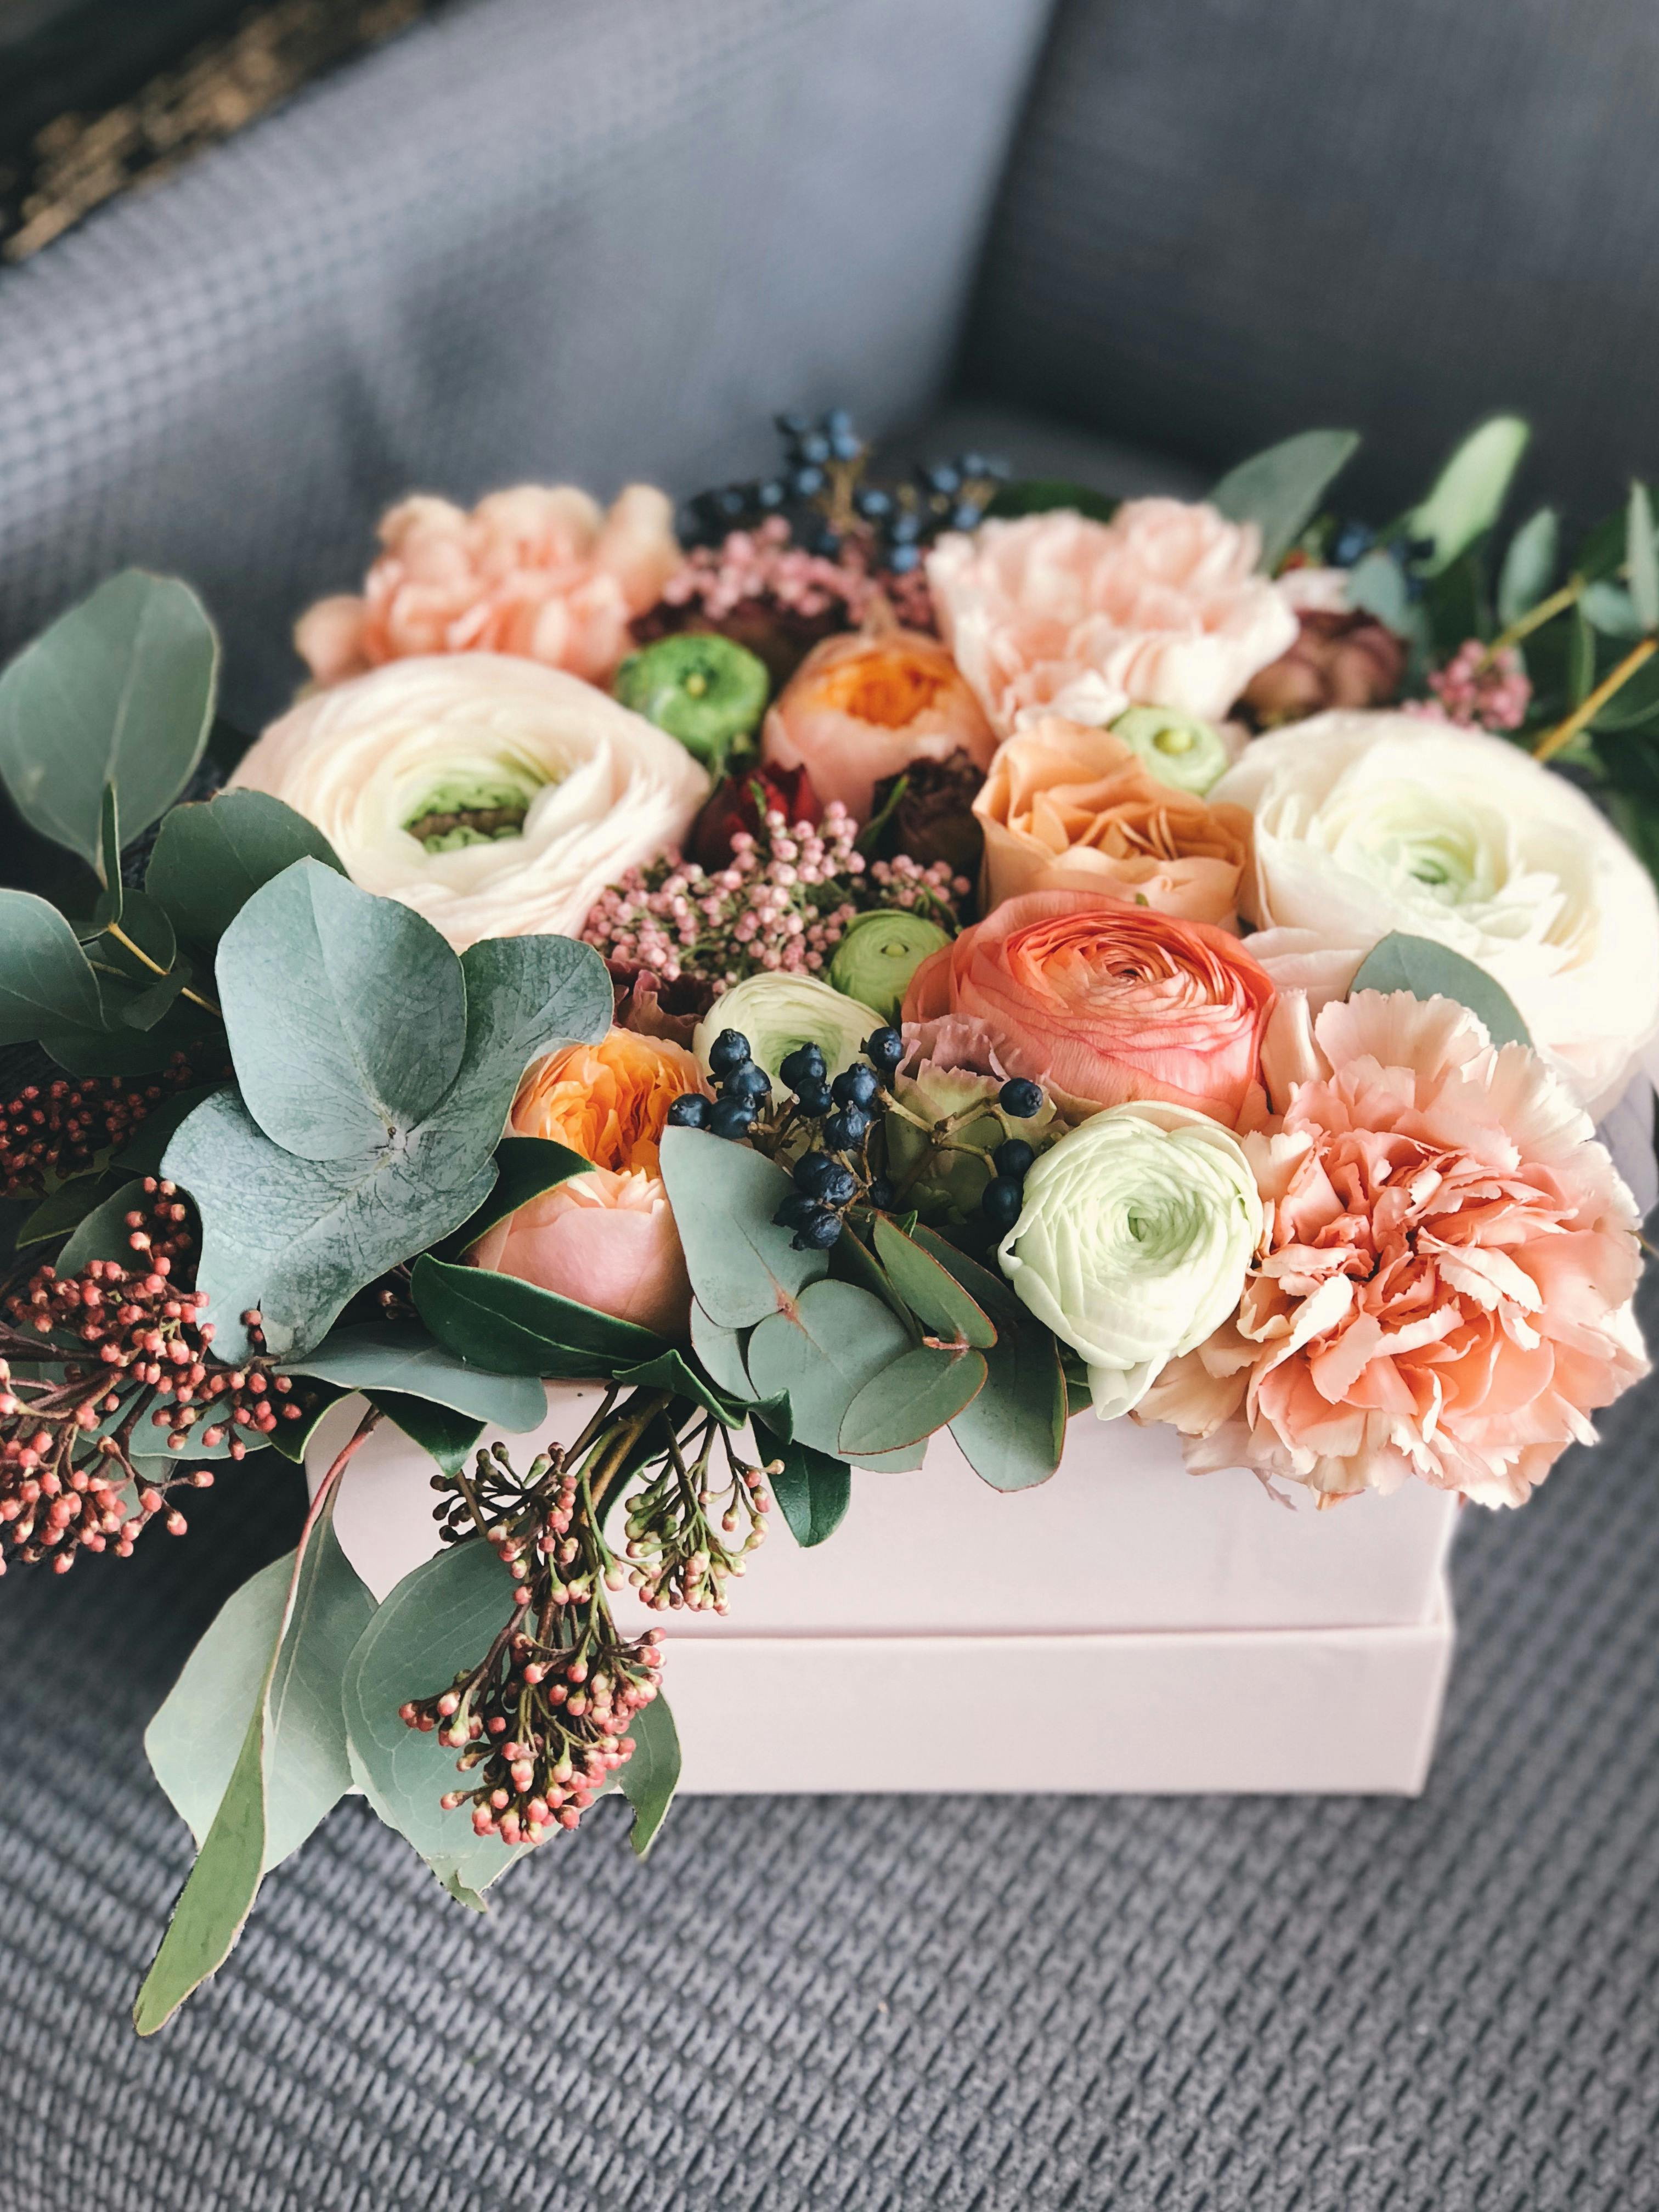 Une composition florale | Source : Pexels